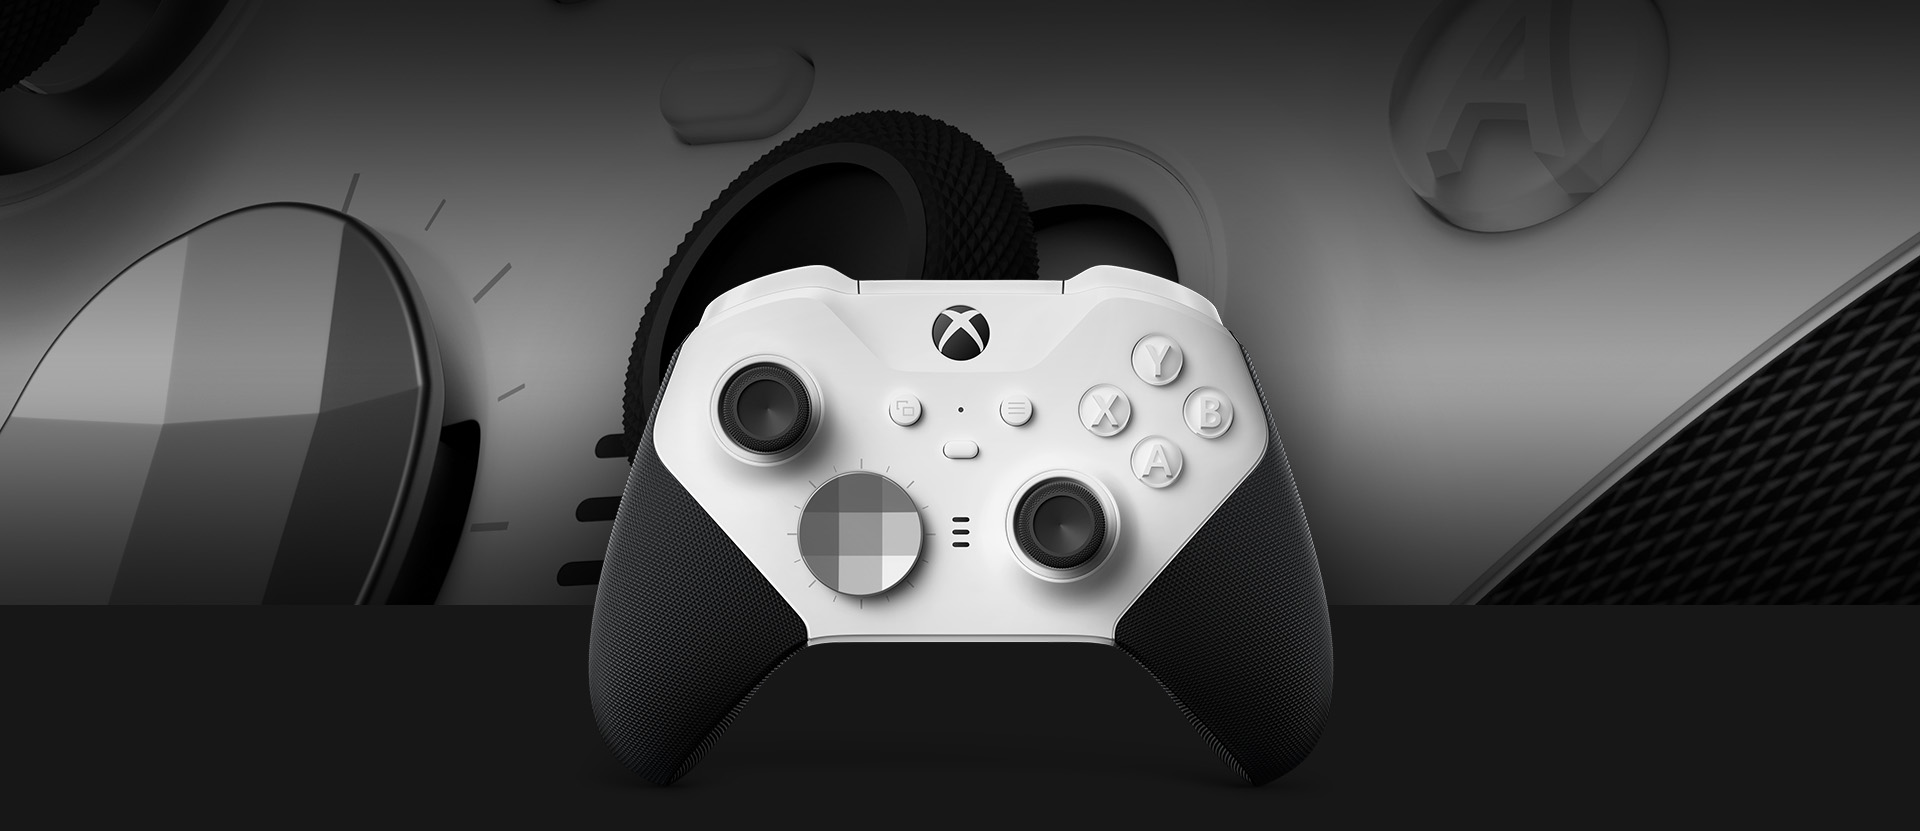 Vooraanzicht van de Xbox Elite draadloze controller Series 2 – Core met een close-up van de controller op de achtergrond.